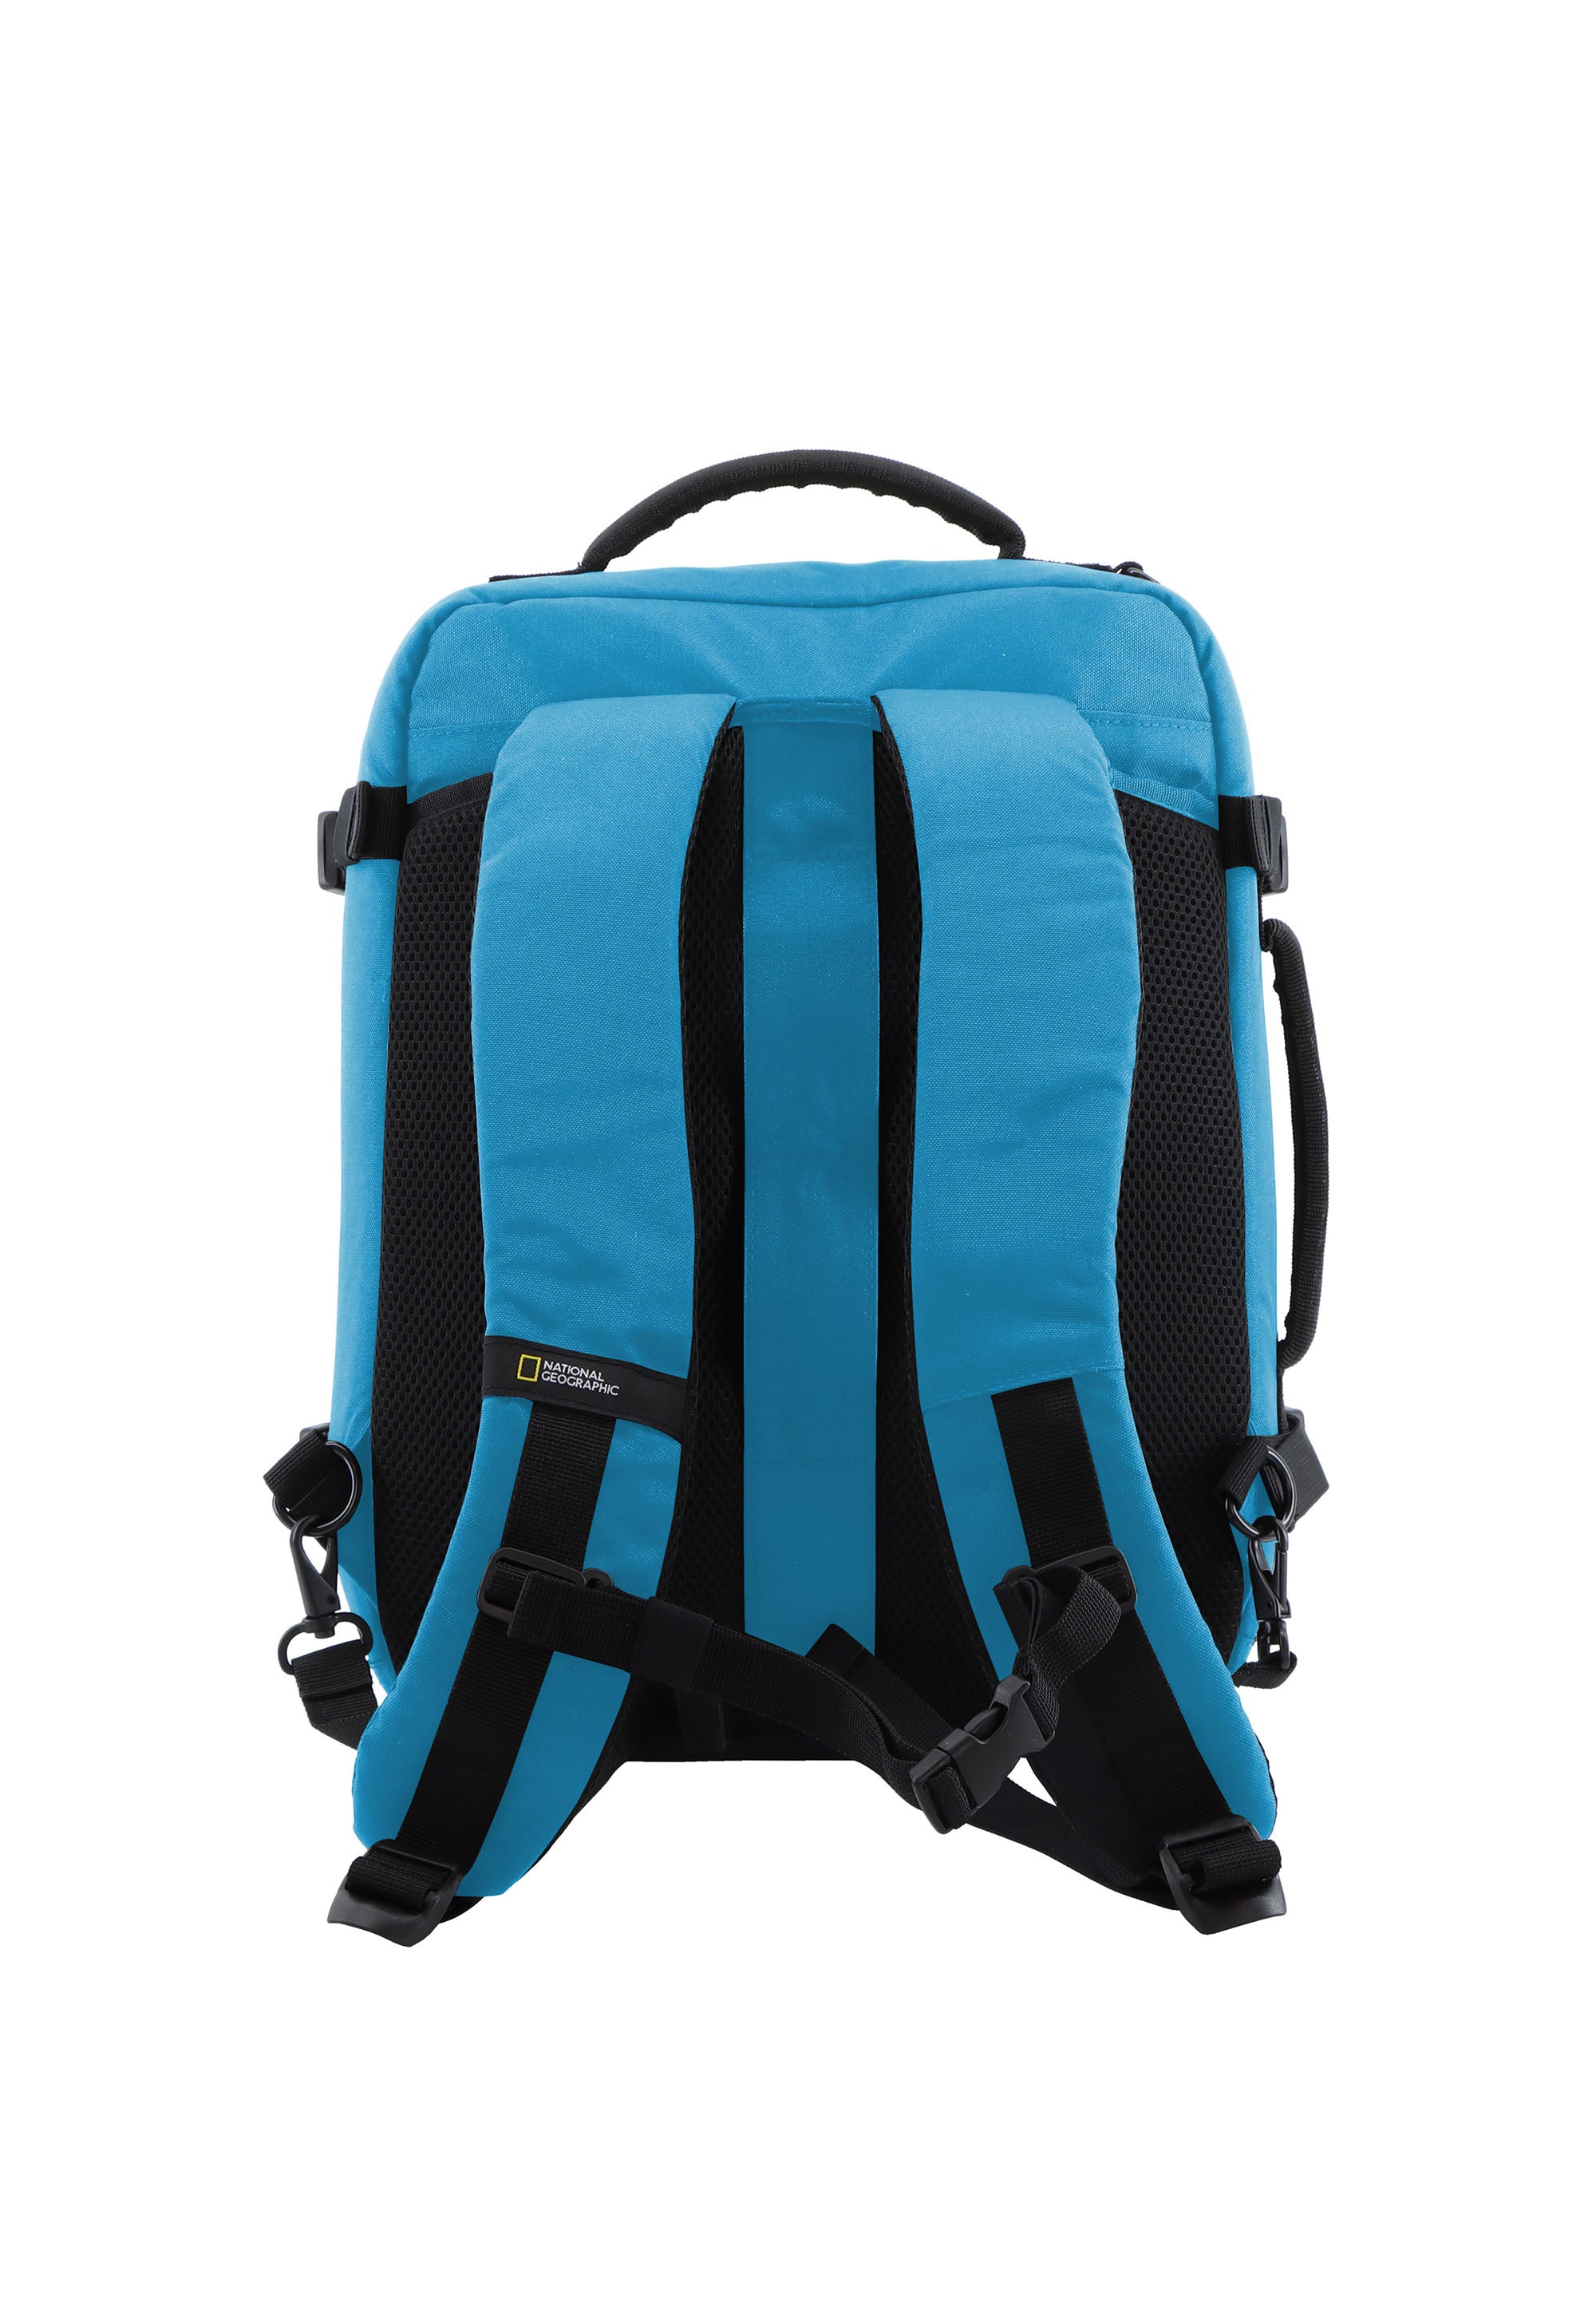 Rucksack Aktentasche Laptoptasche der Nat Geo Ocean Serie in blau RPET N20906